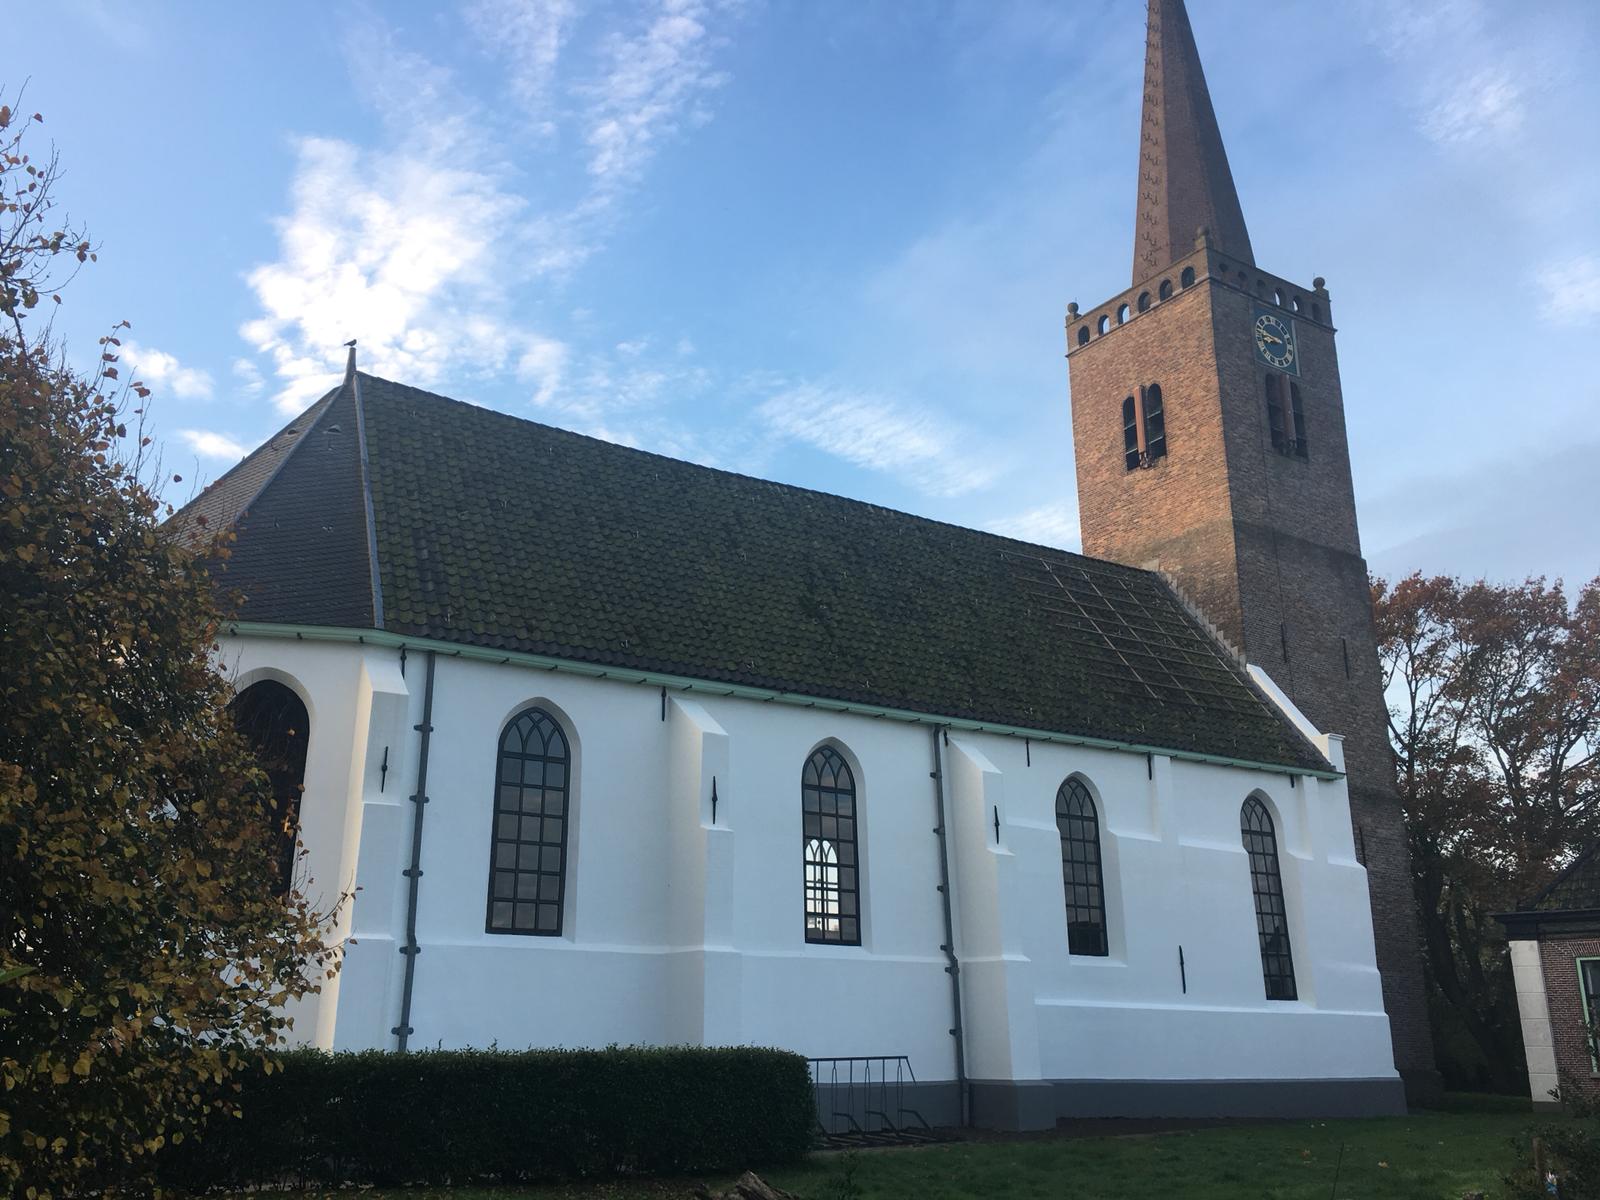 Cultuurhuis ABBEkerk: Junifair met diverse kramen, muziek en catering